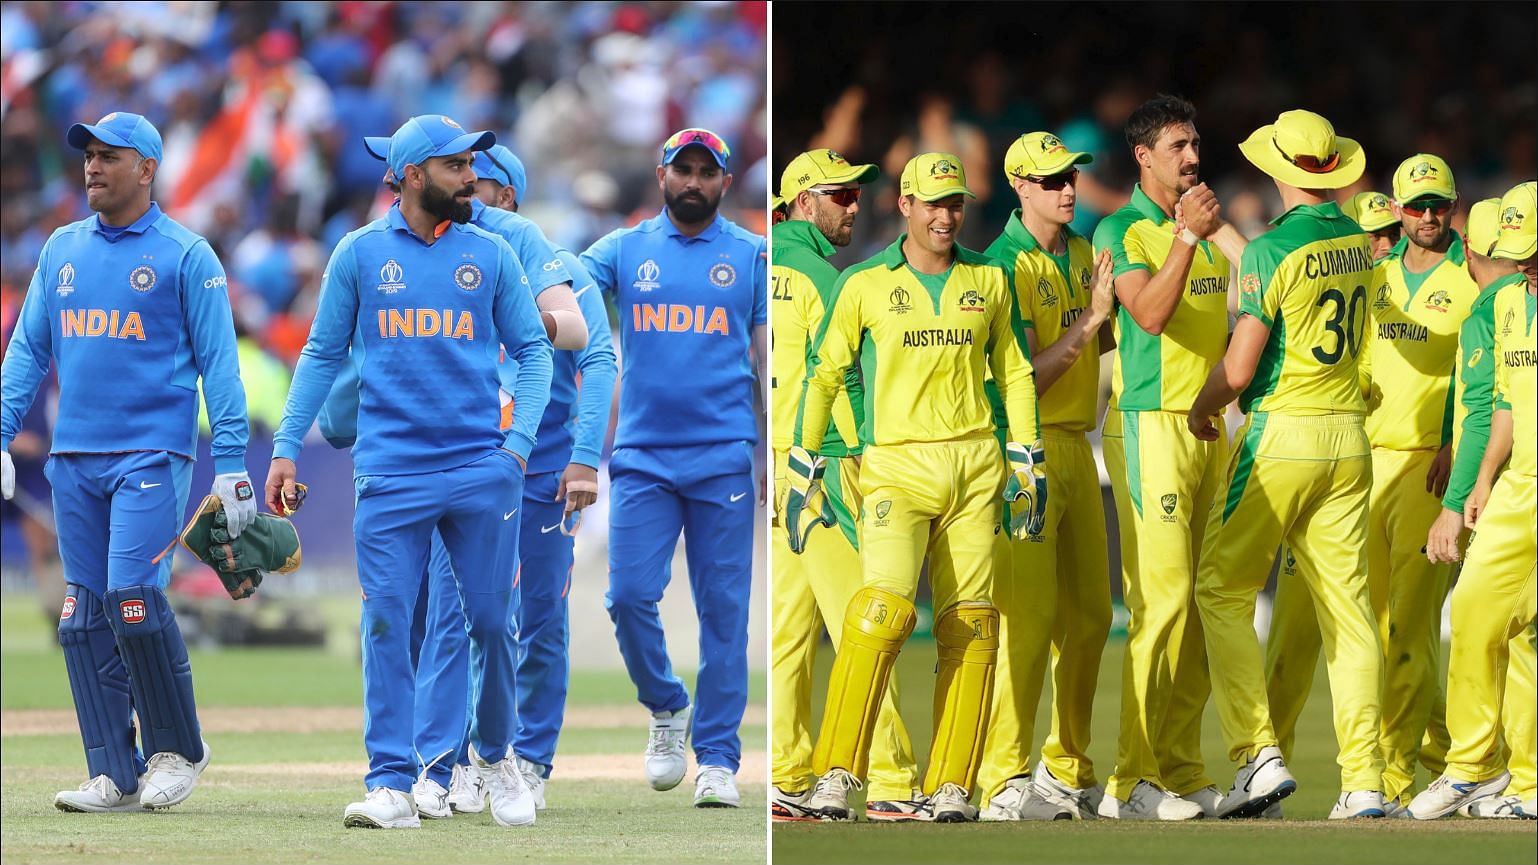 लीग मैचों के आखिरी दौर में भारत को श्रीलंका के खिलाफ और ऑस्ट्रेलिया को साउथ अफ्रीका से मुकाबला करना है.